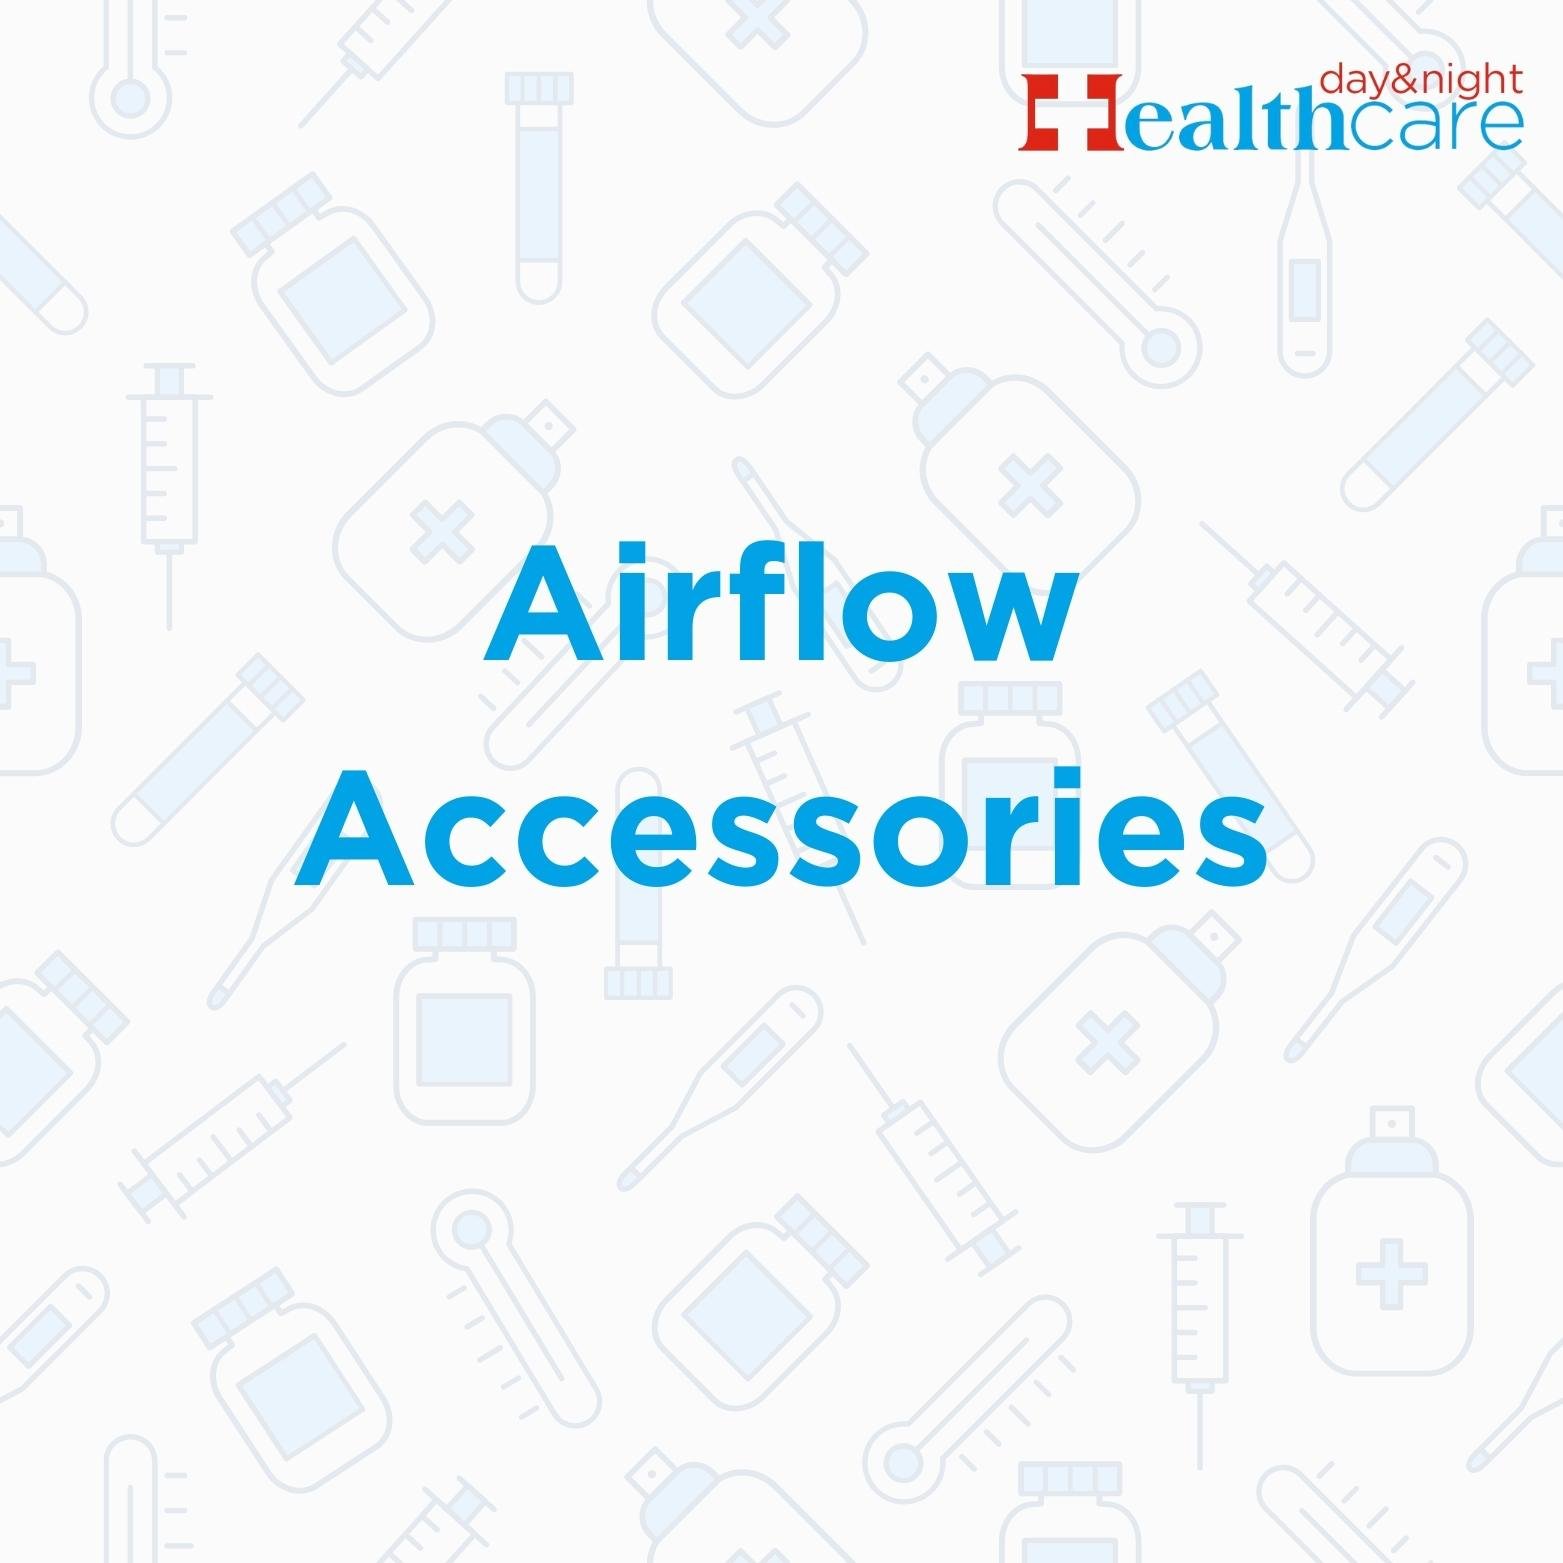 Airflow Accessories